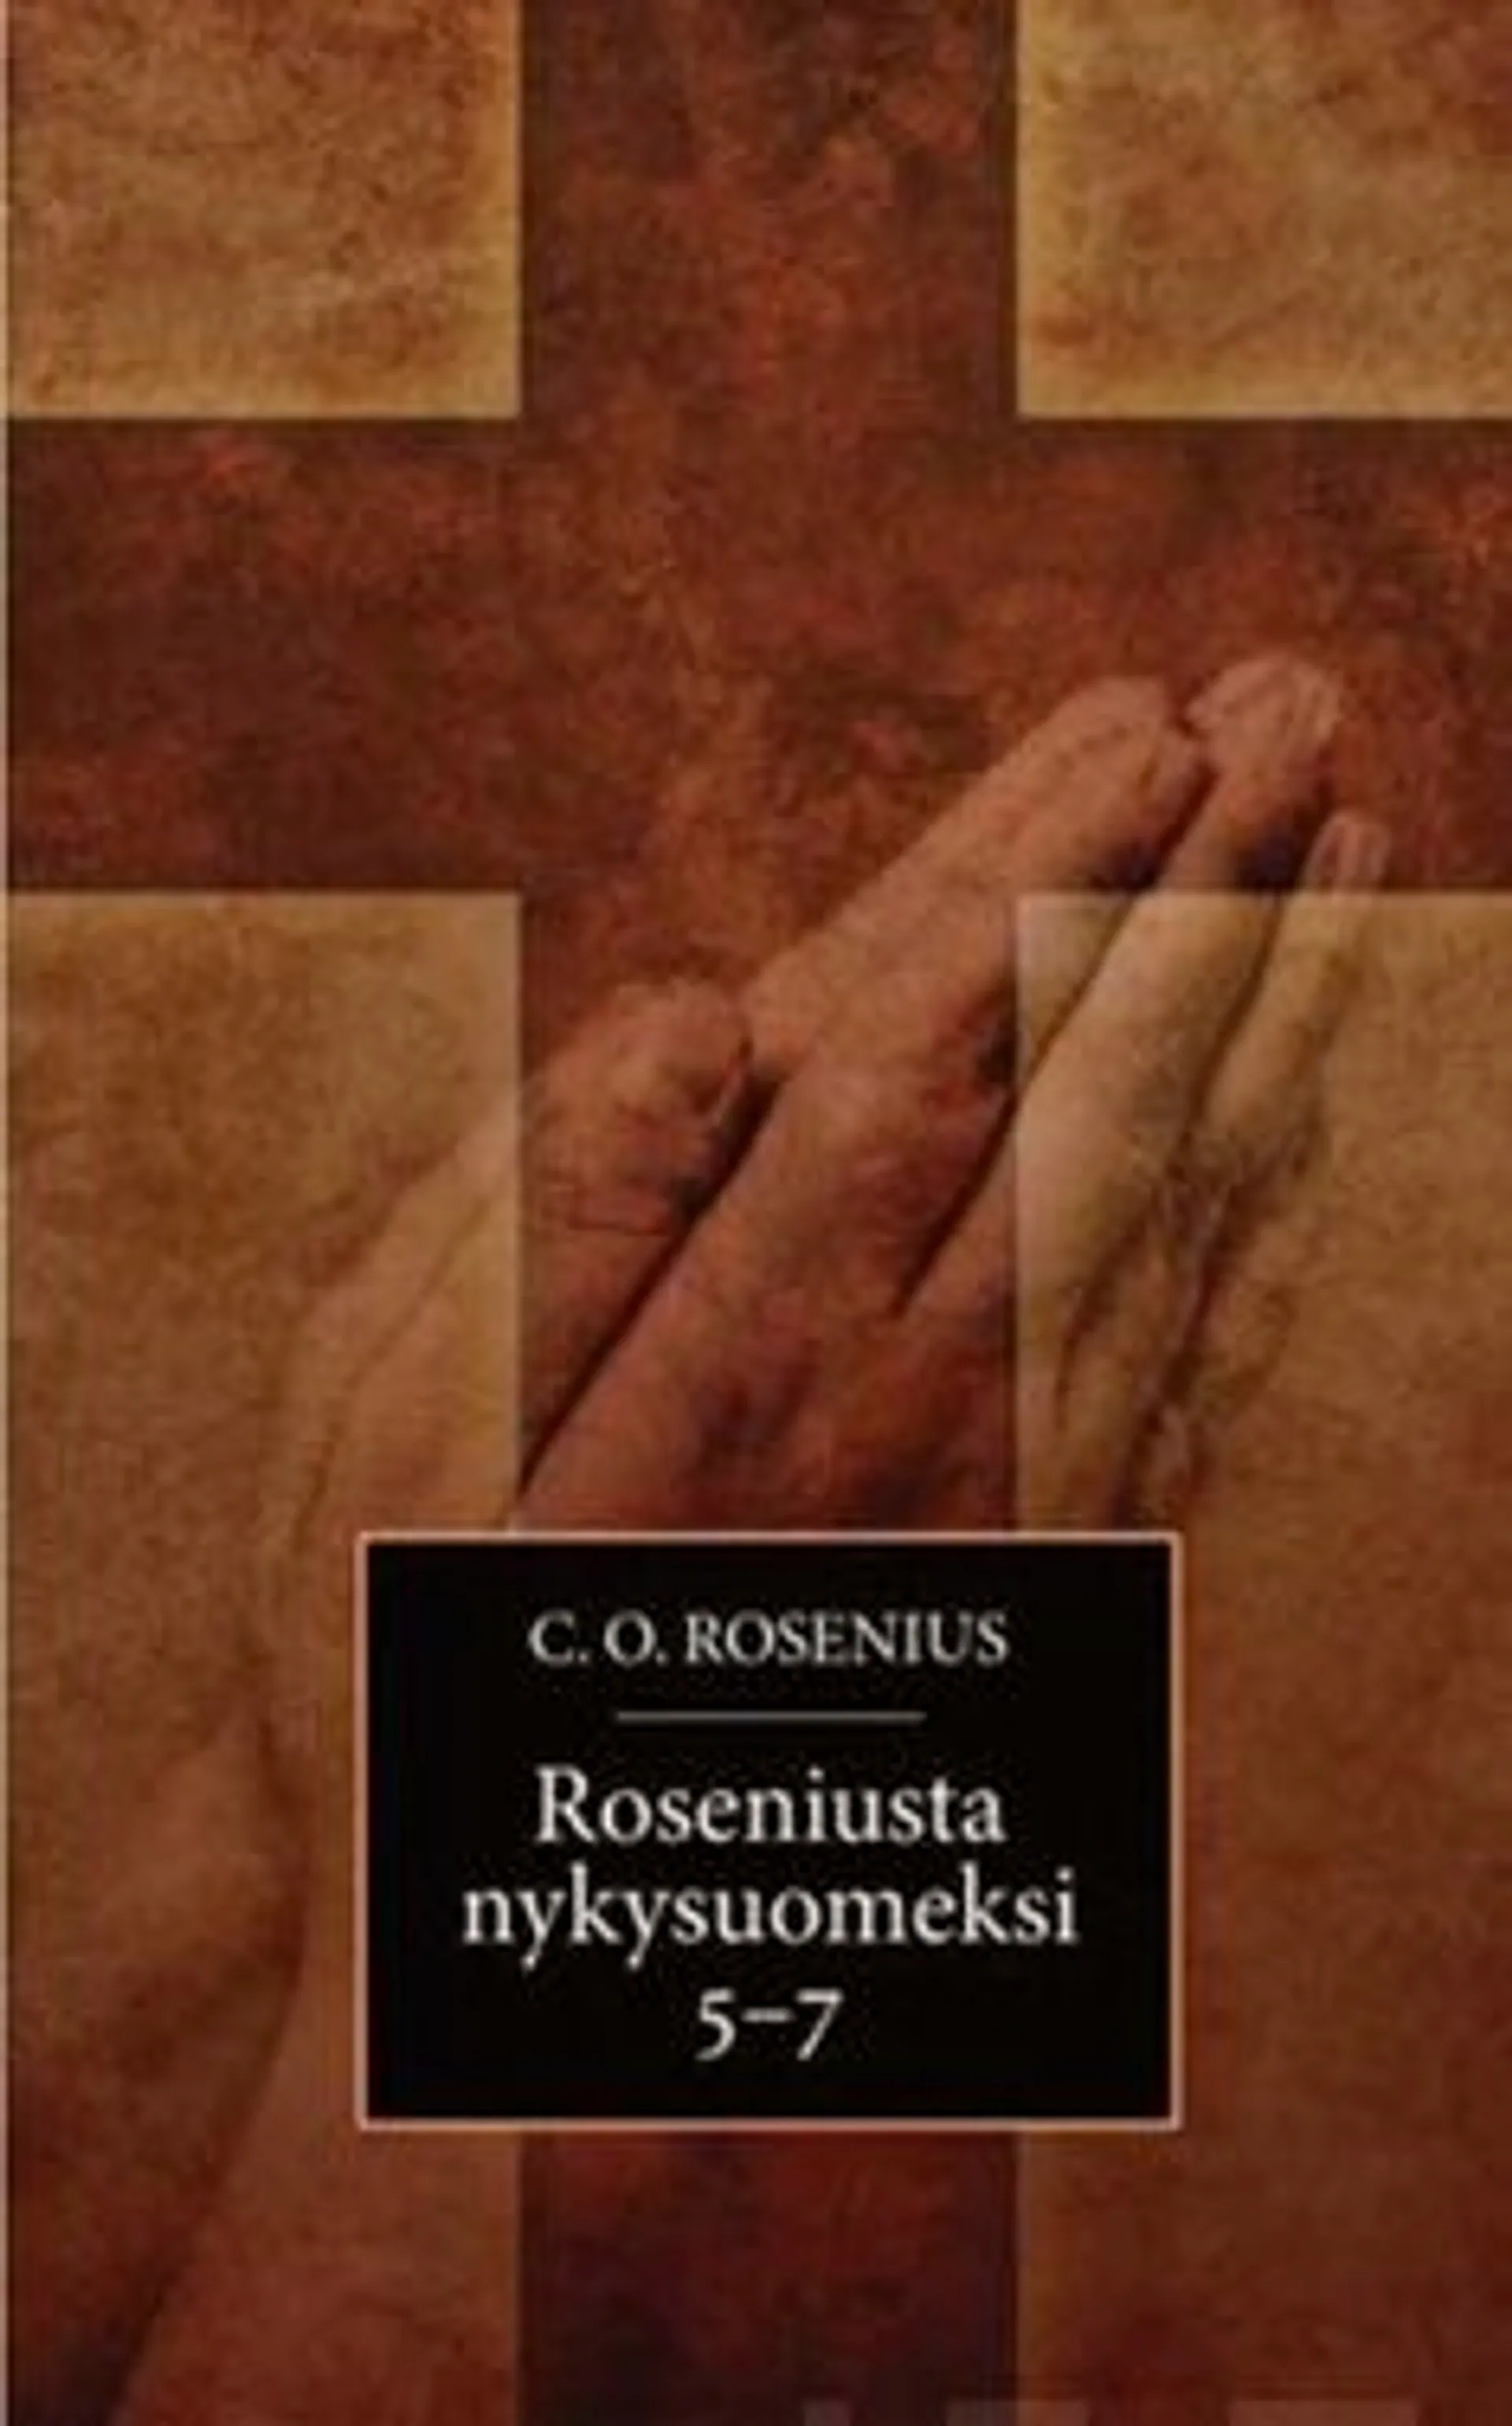 Rosenius, Roseniusta nykysuomeksi 5-7